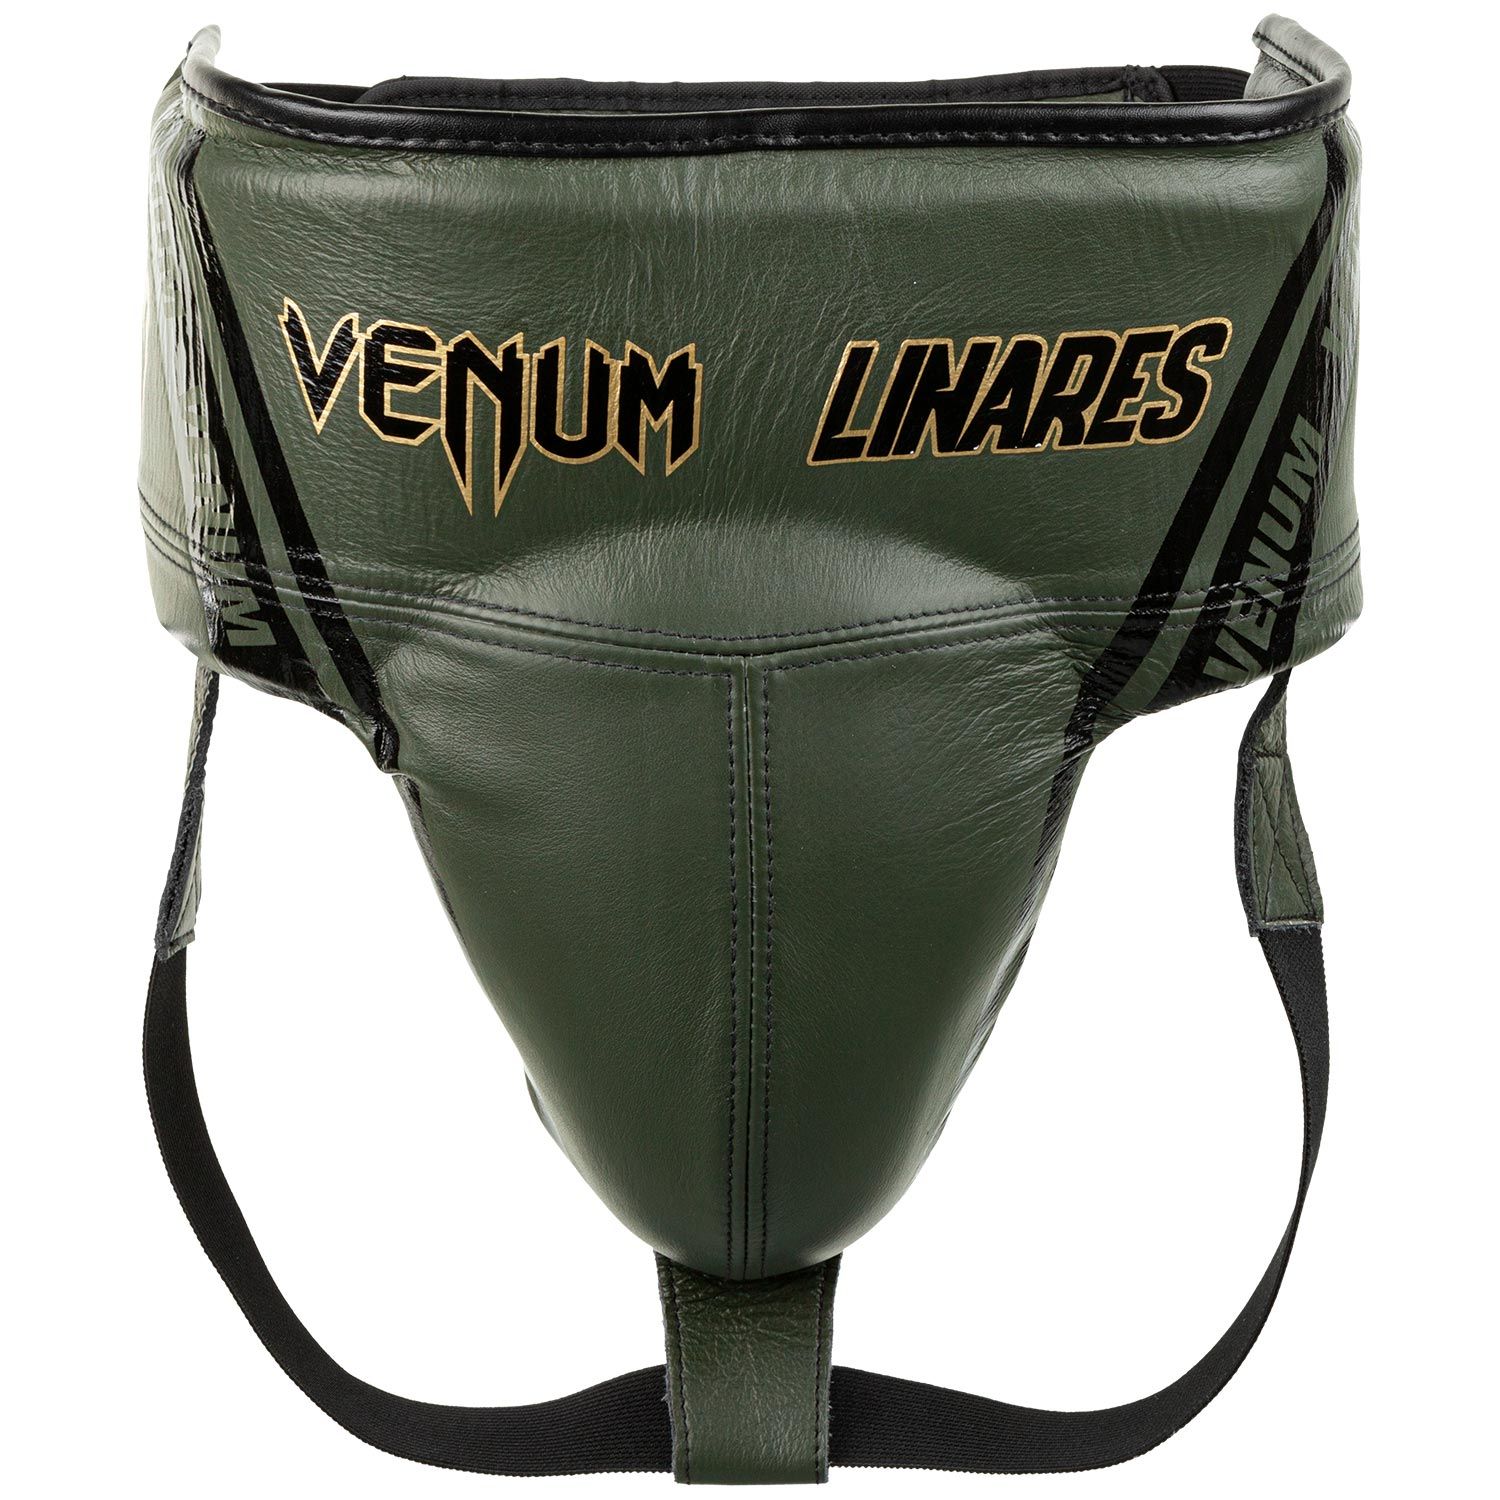 Venum Pro Beschermende cup voor boksers Linares-editie - met klittenband - kaki/zwart/goud